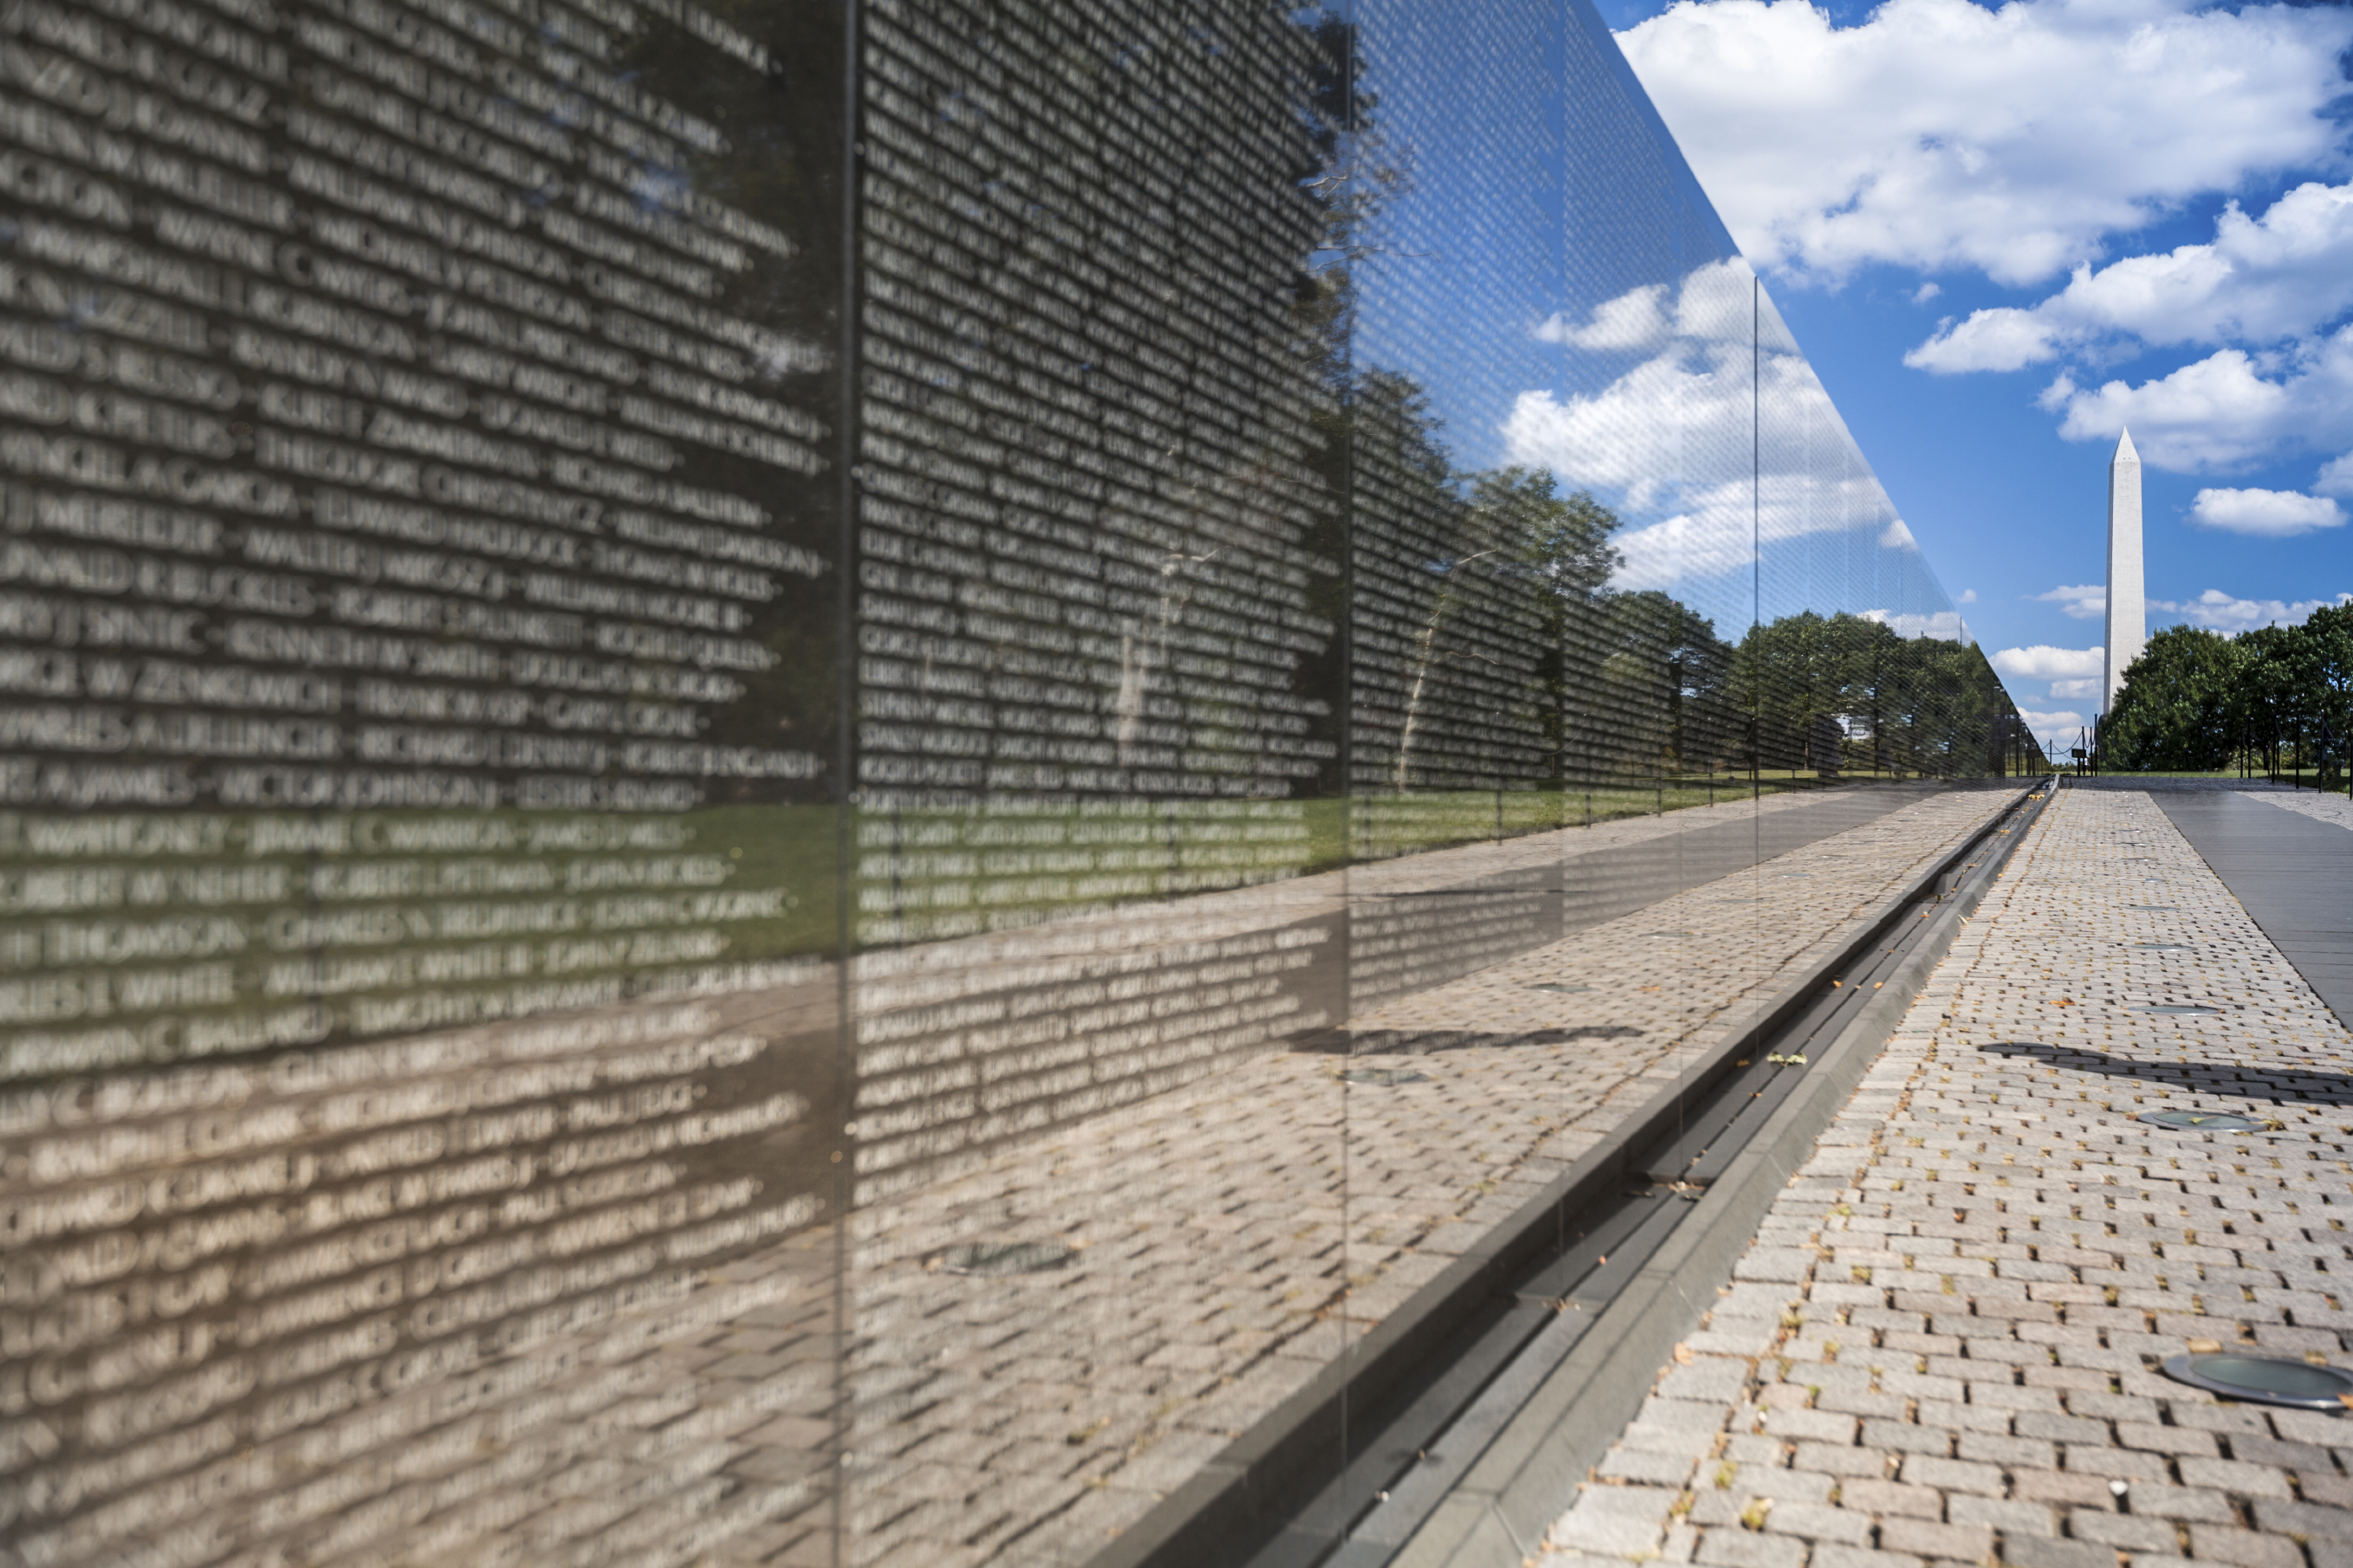 Vietnam Veterans Memorial - WorldStrides